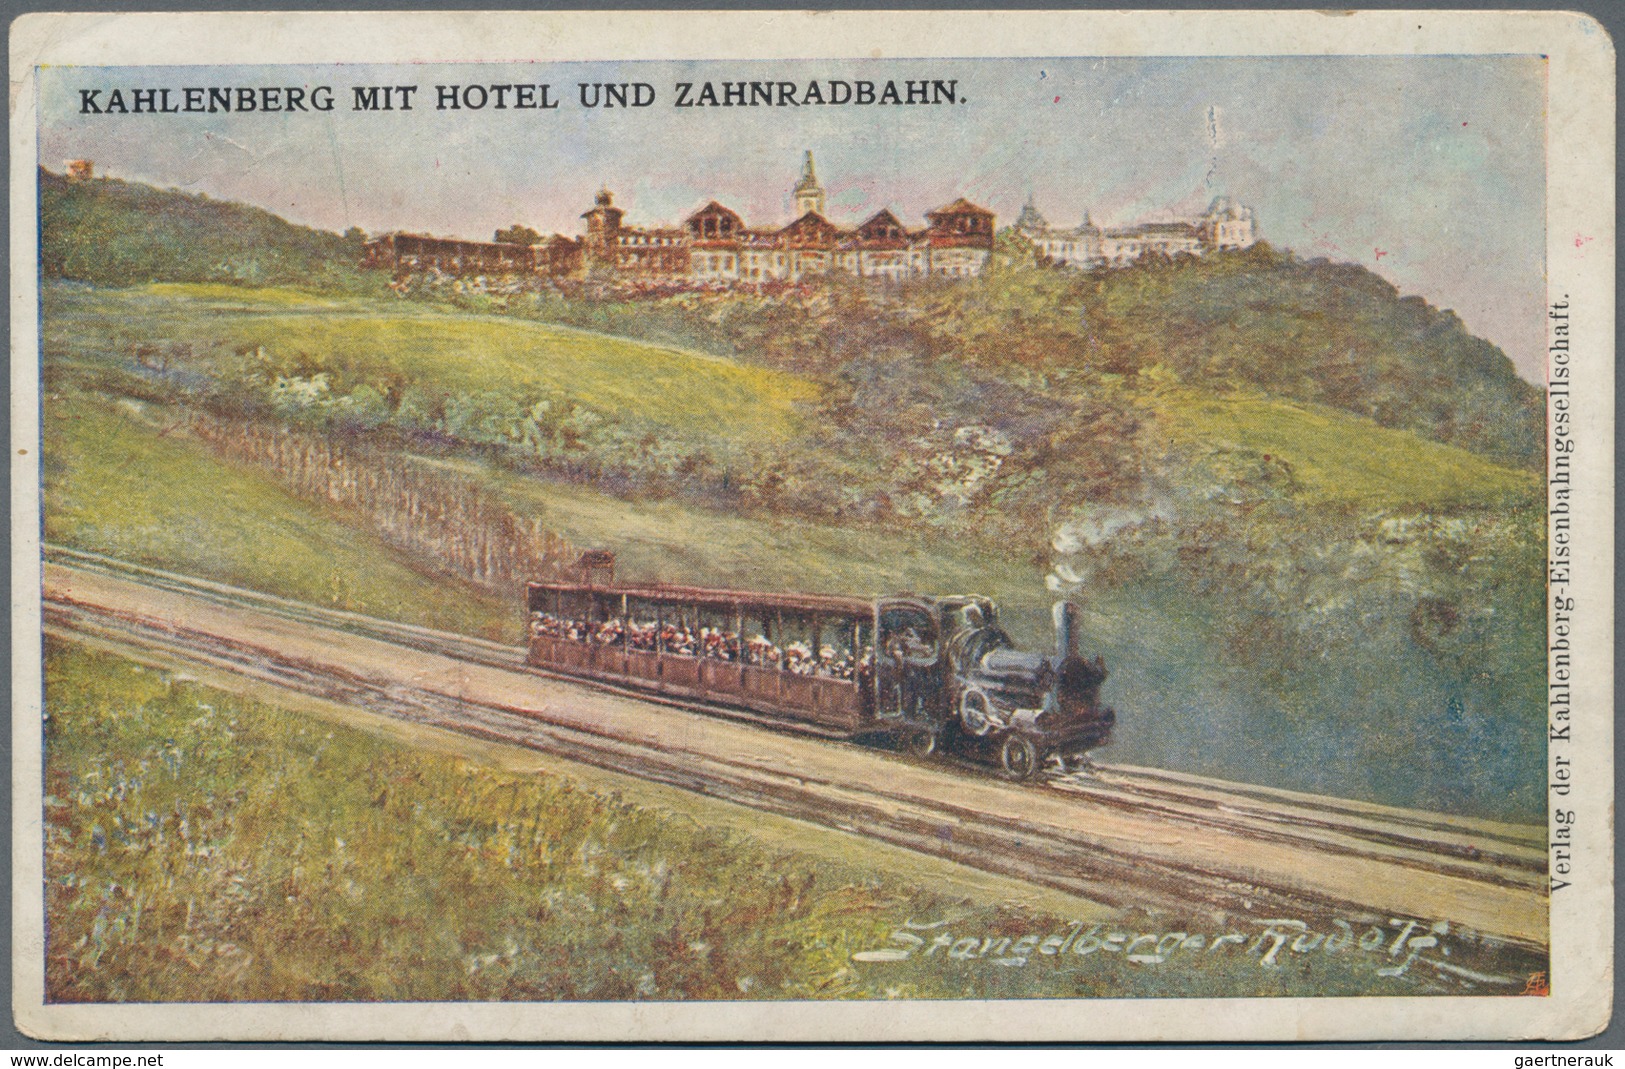 Ansichtskarten: Deutschland: 1885/1940 (ca.), Partie von ca. 33 Karten mit Topographie und Motiven,